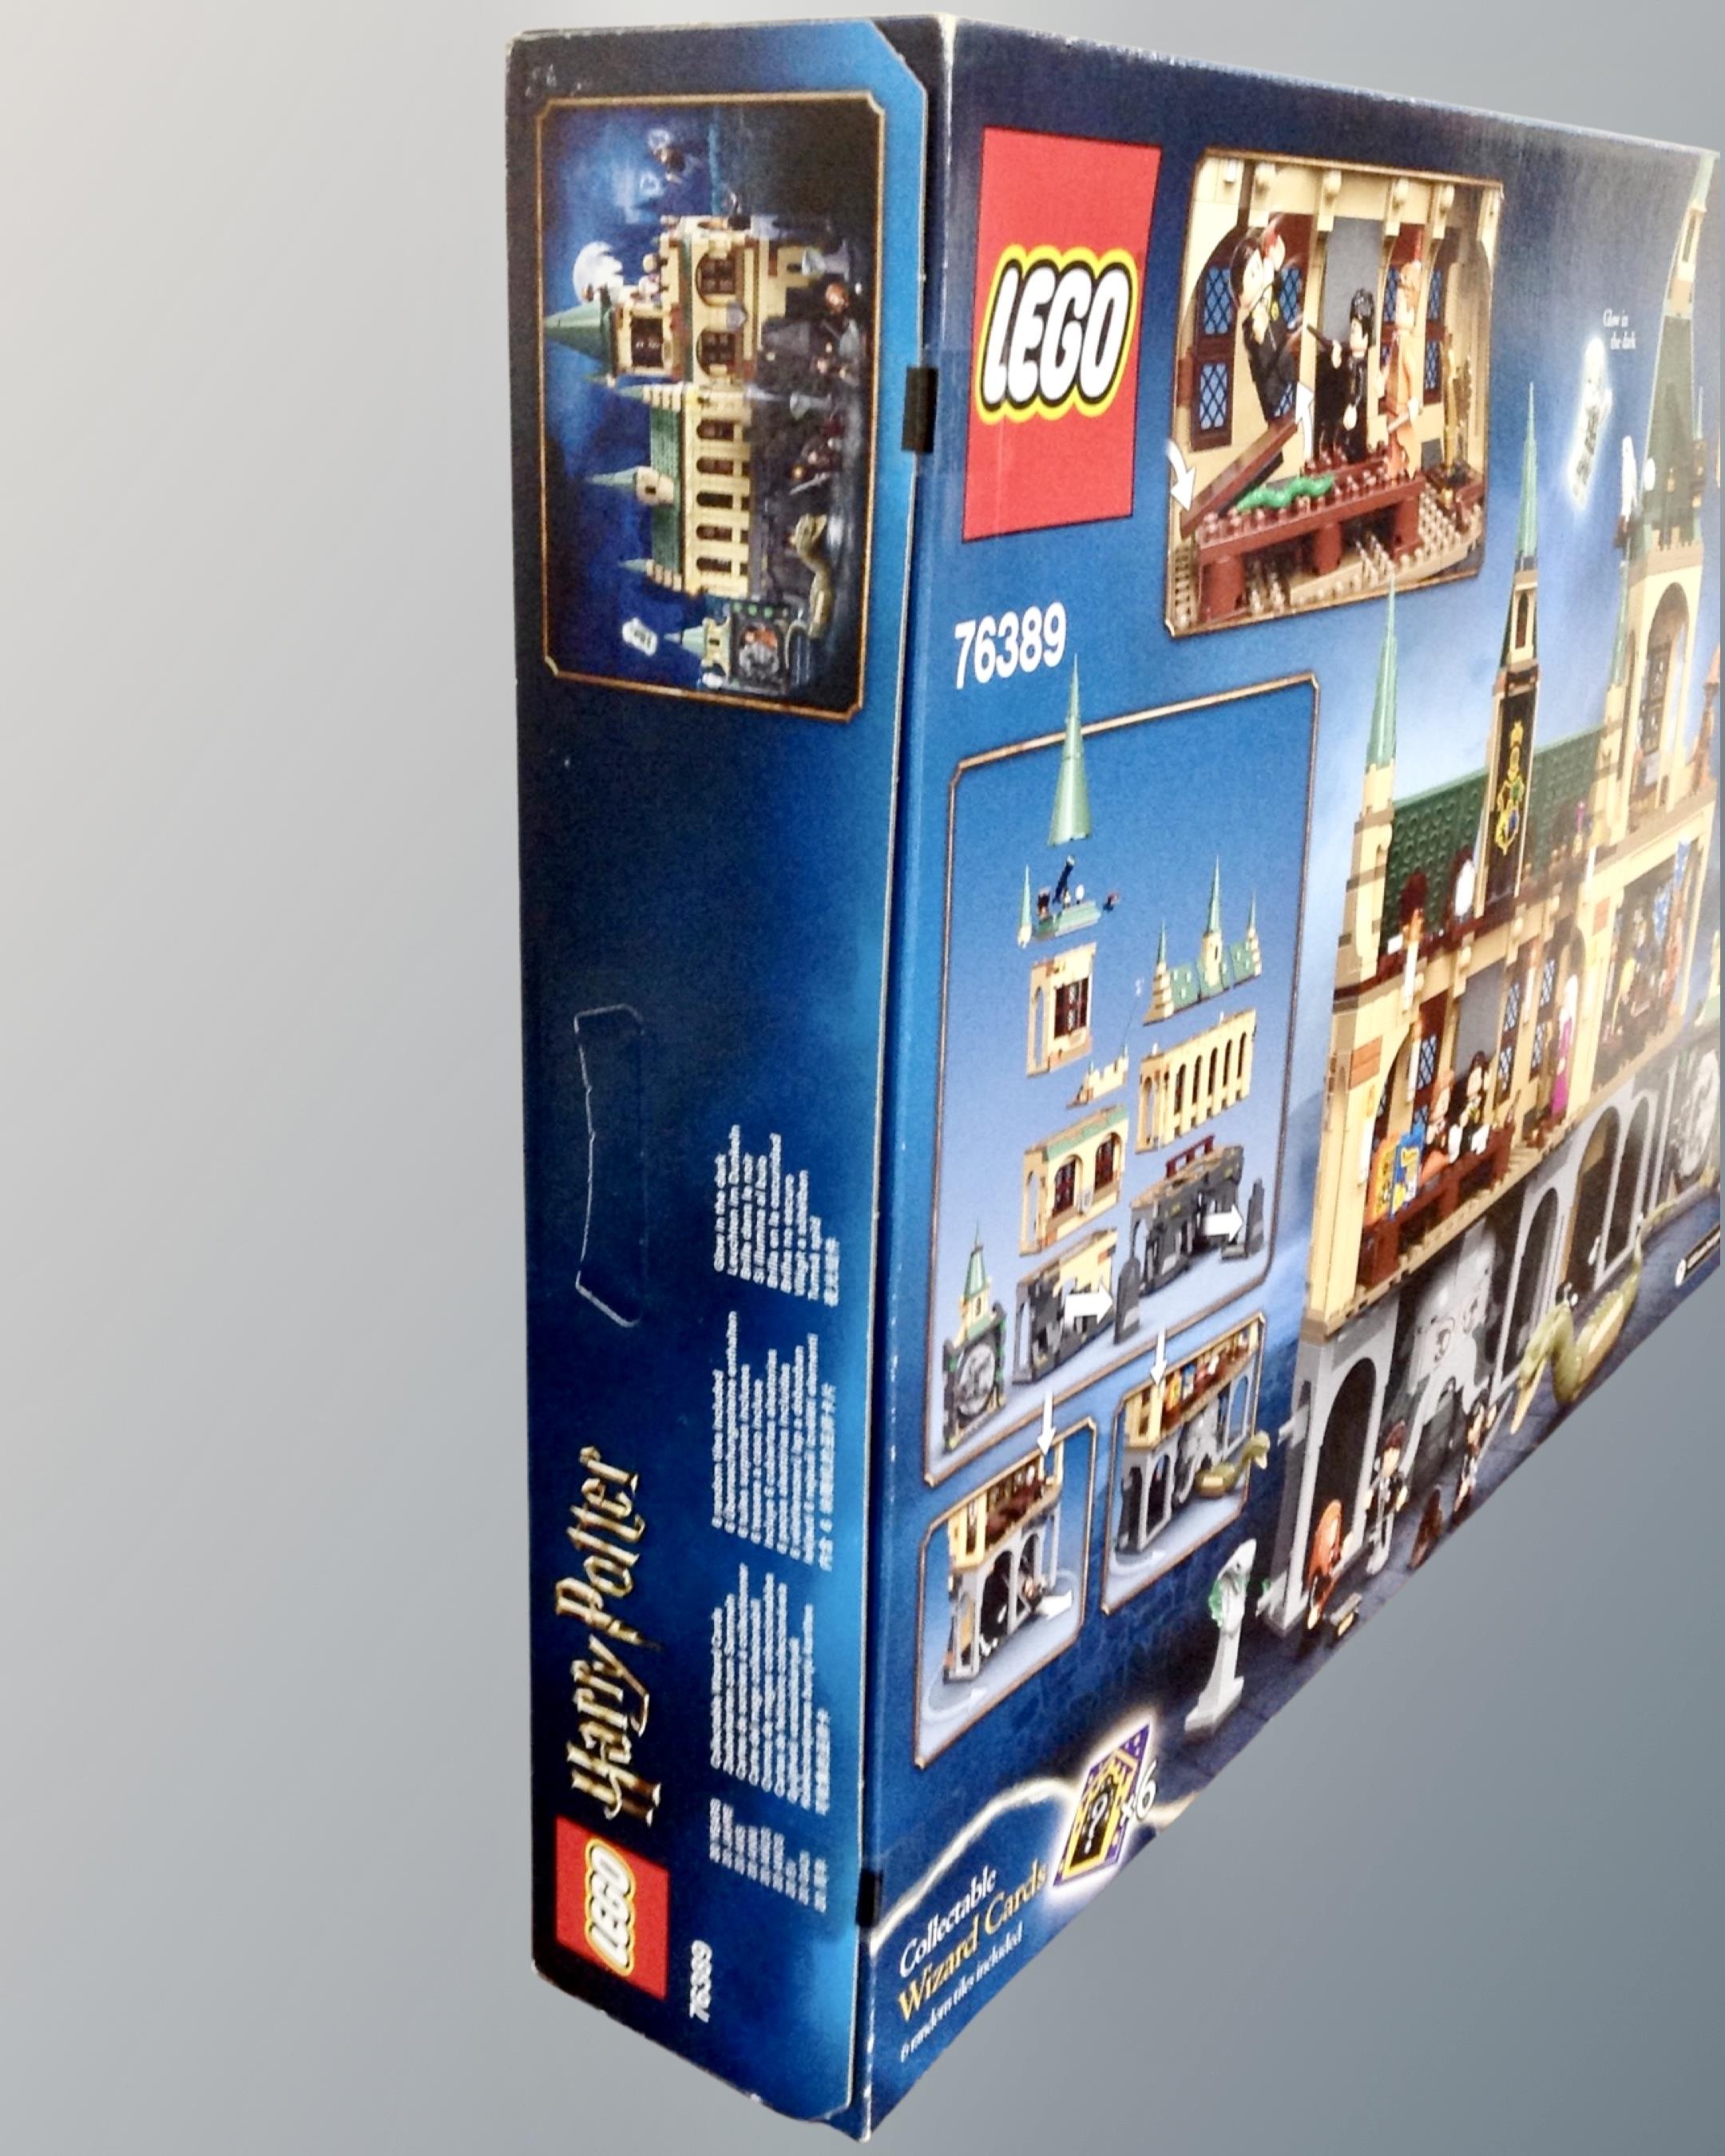 Lego : 76389 Harry Potter Hogwarts Chamber of Secrets, boxed, sealed, new. - Image 4 of 4